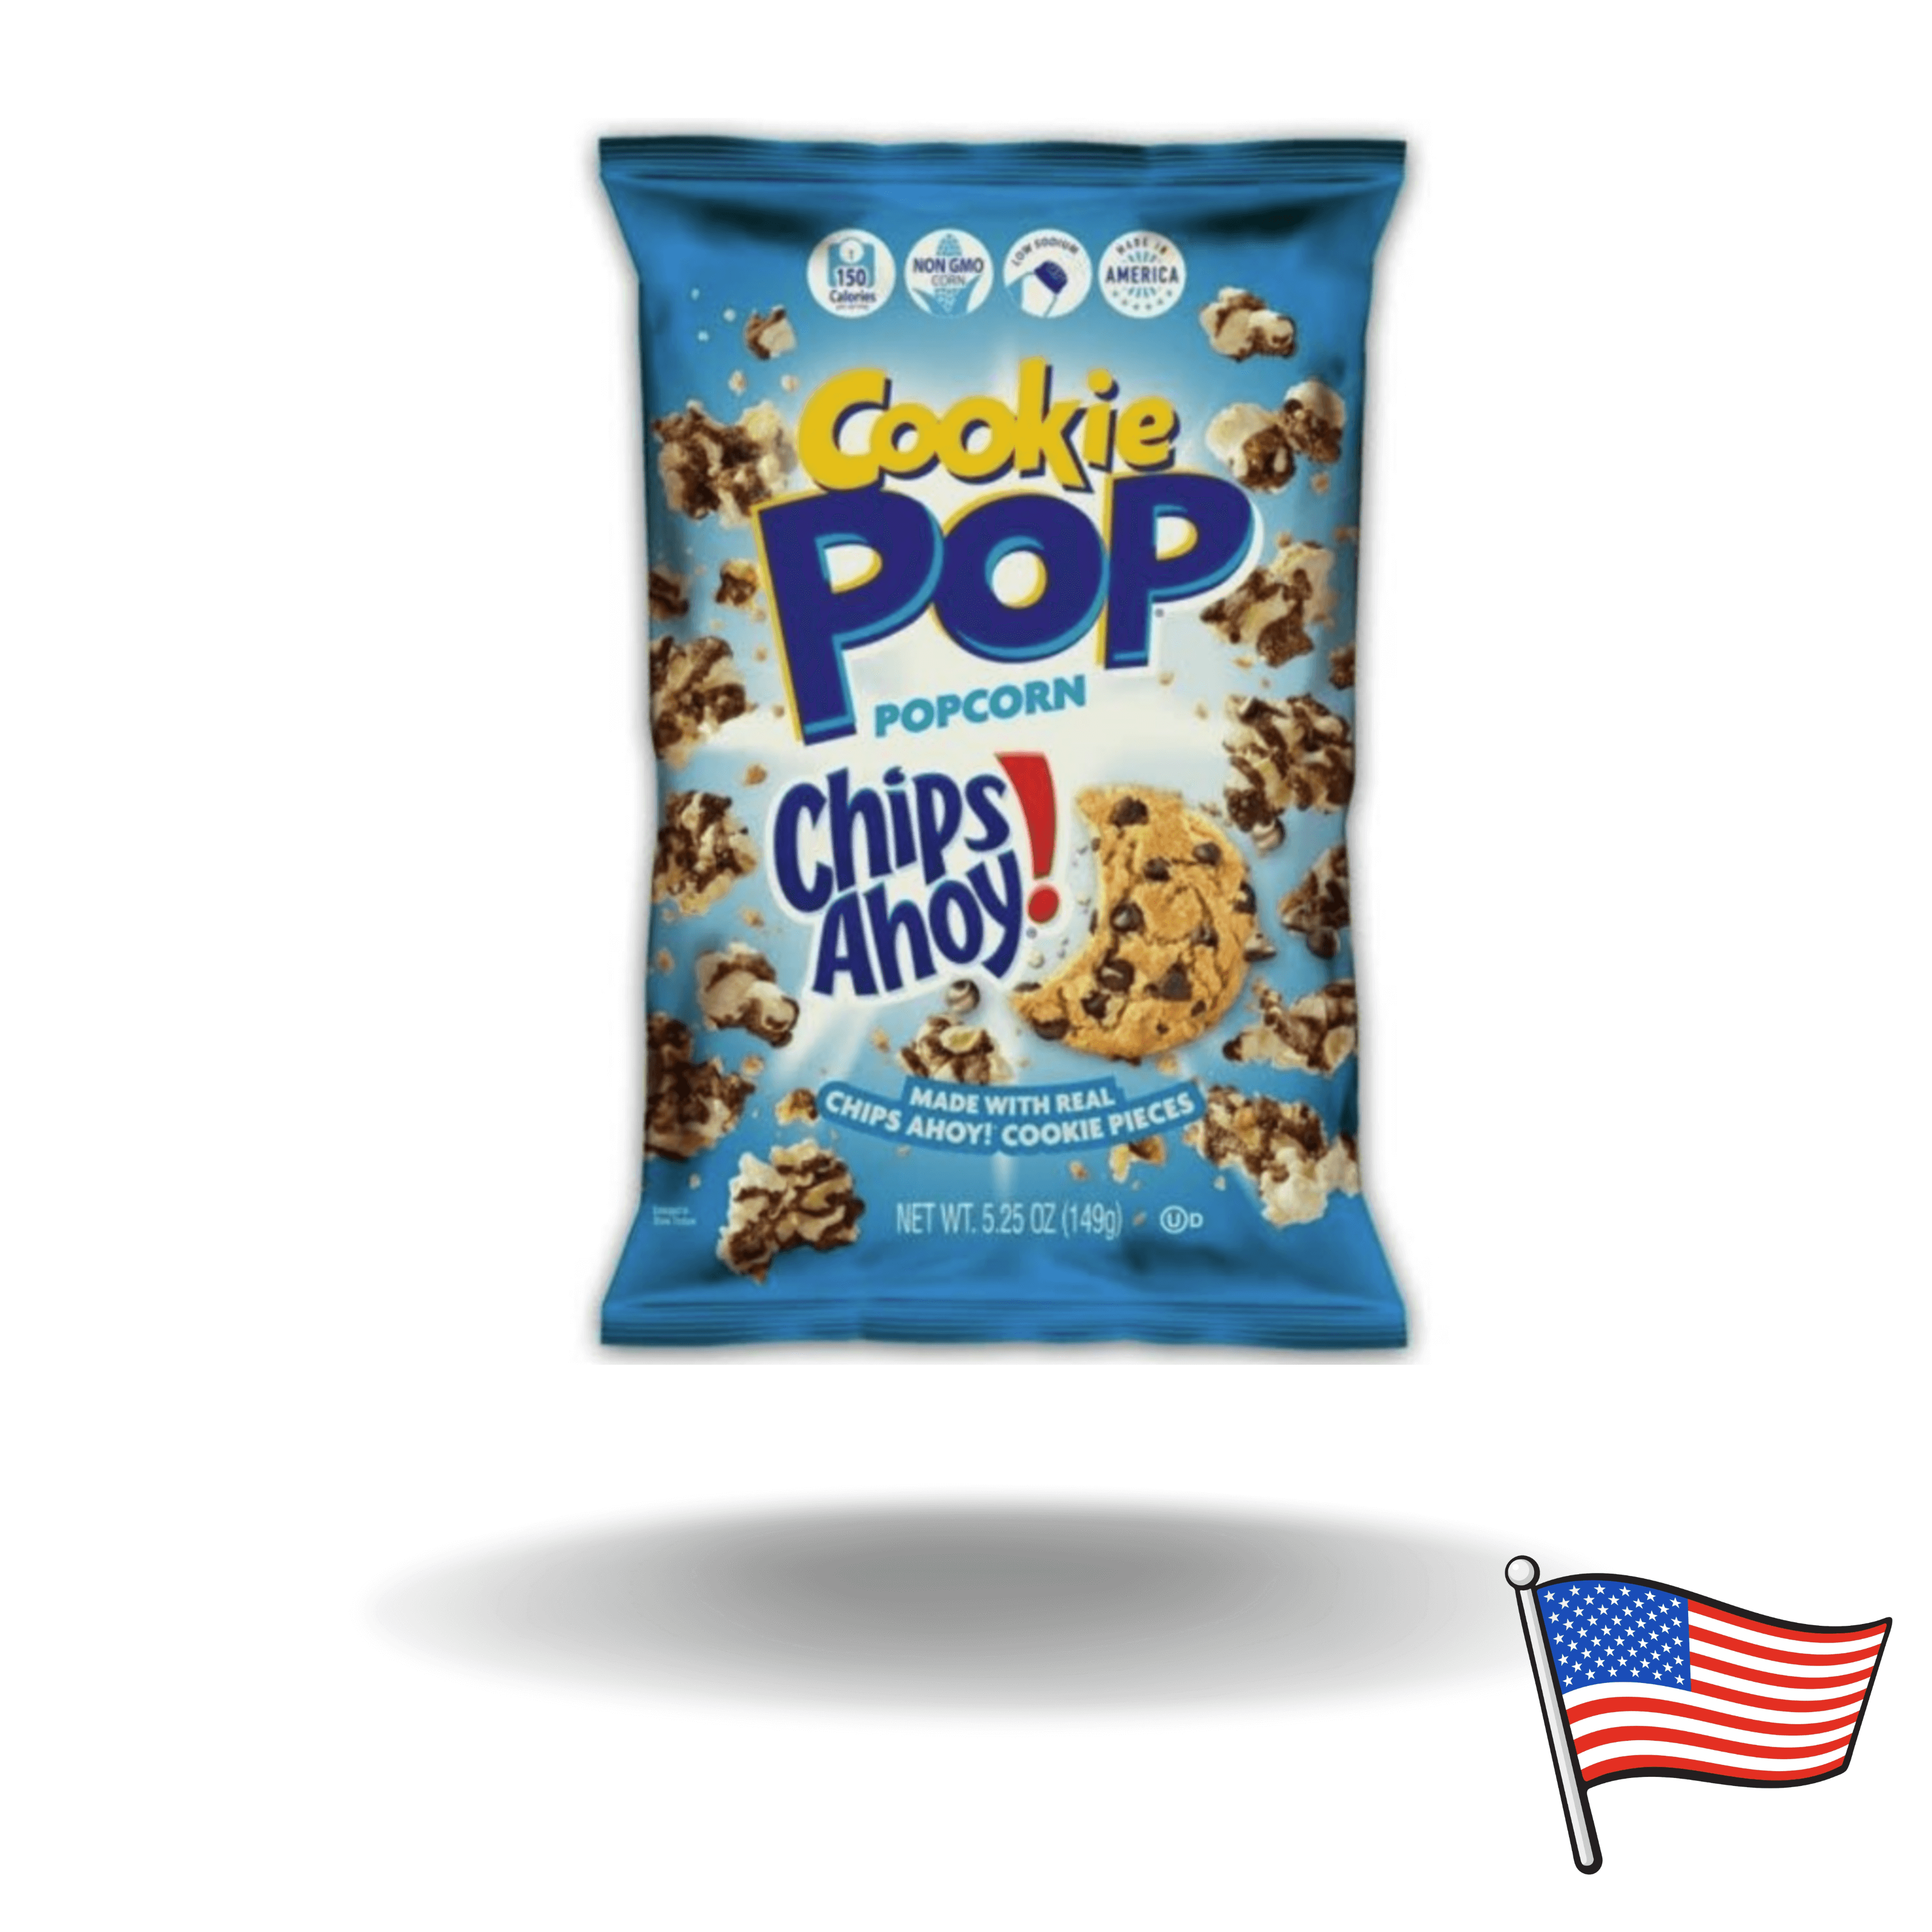 Die Popcorn mit dem Cookie Geschmack sind auf der ganzen Welt ein Hingucker. Sie wurden in Amerika produziert und inzwischen wird es auch in Europa immer bekannter.